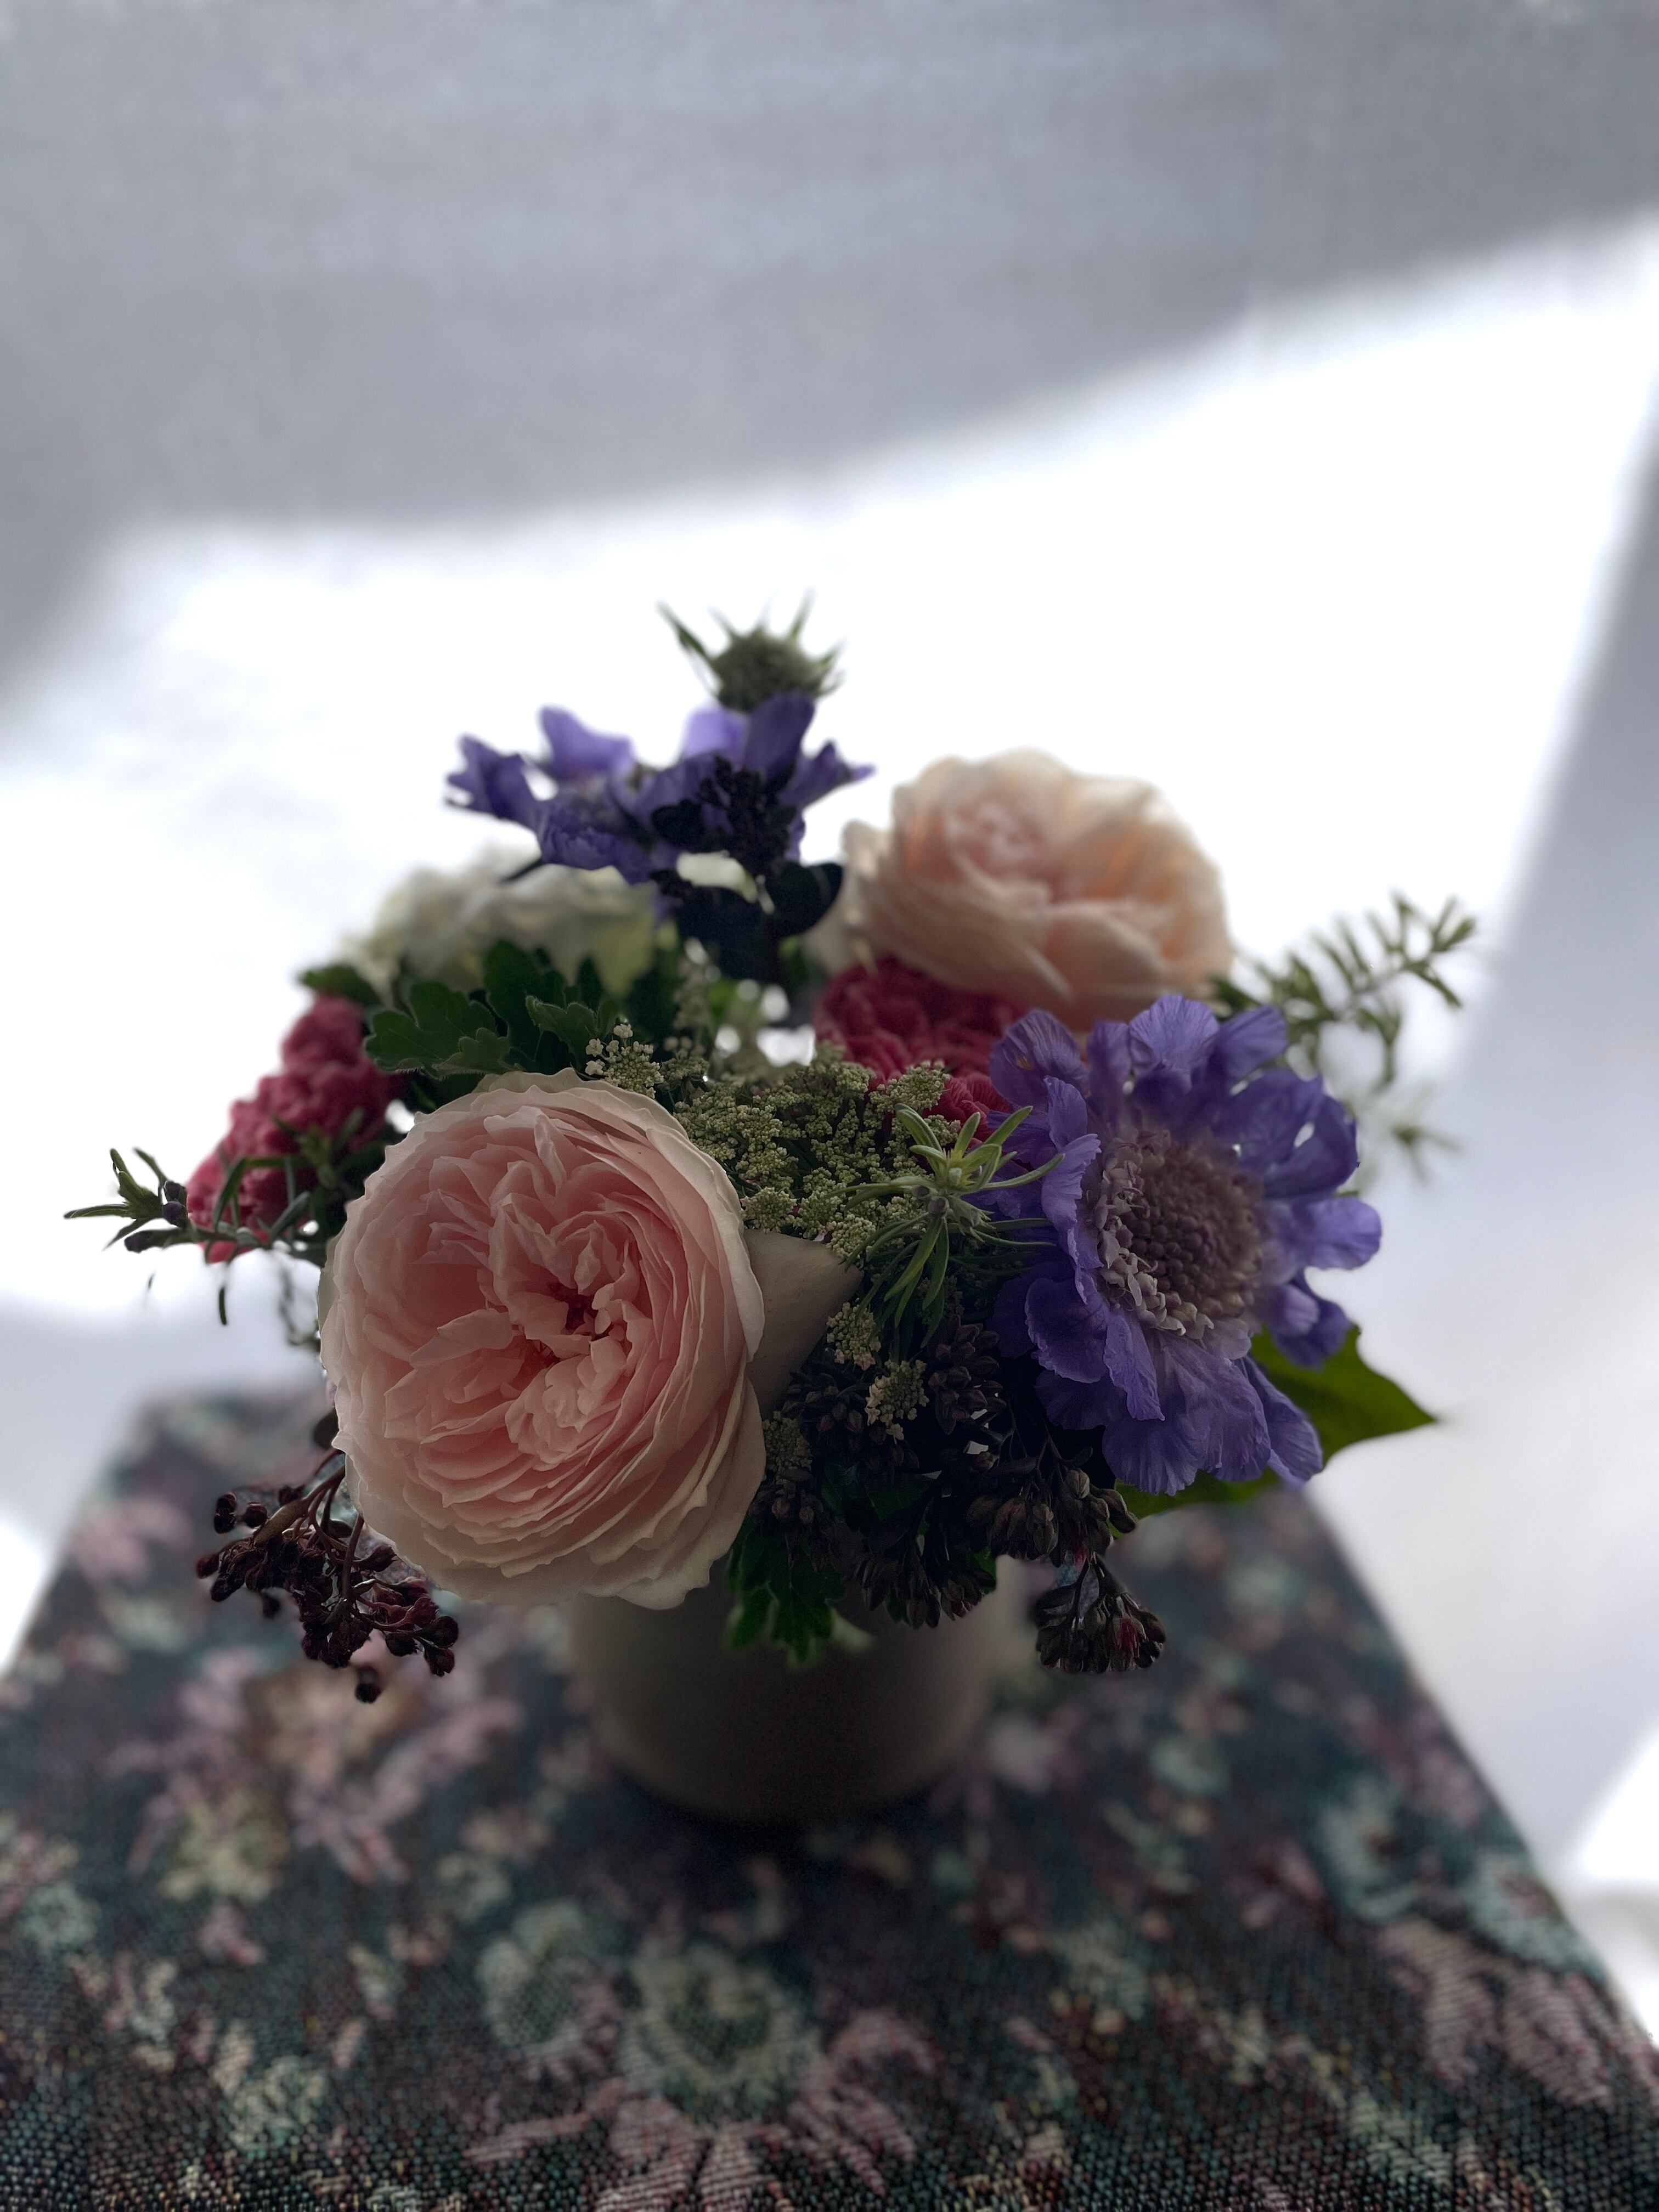 5/11日~12日到着便//thanks flower (S size) //ピンクのバラ   for Mother's Day //